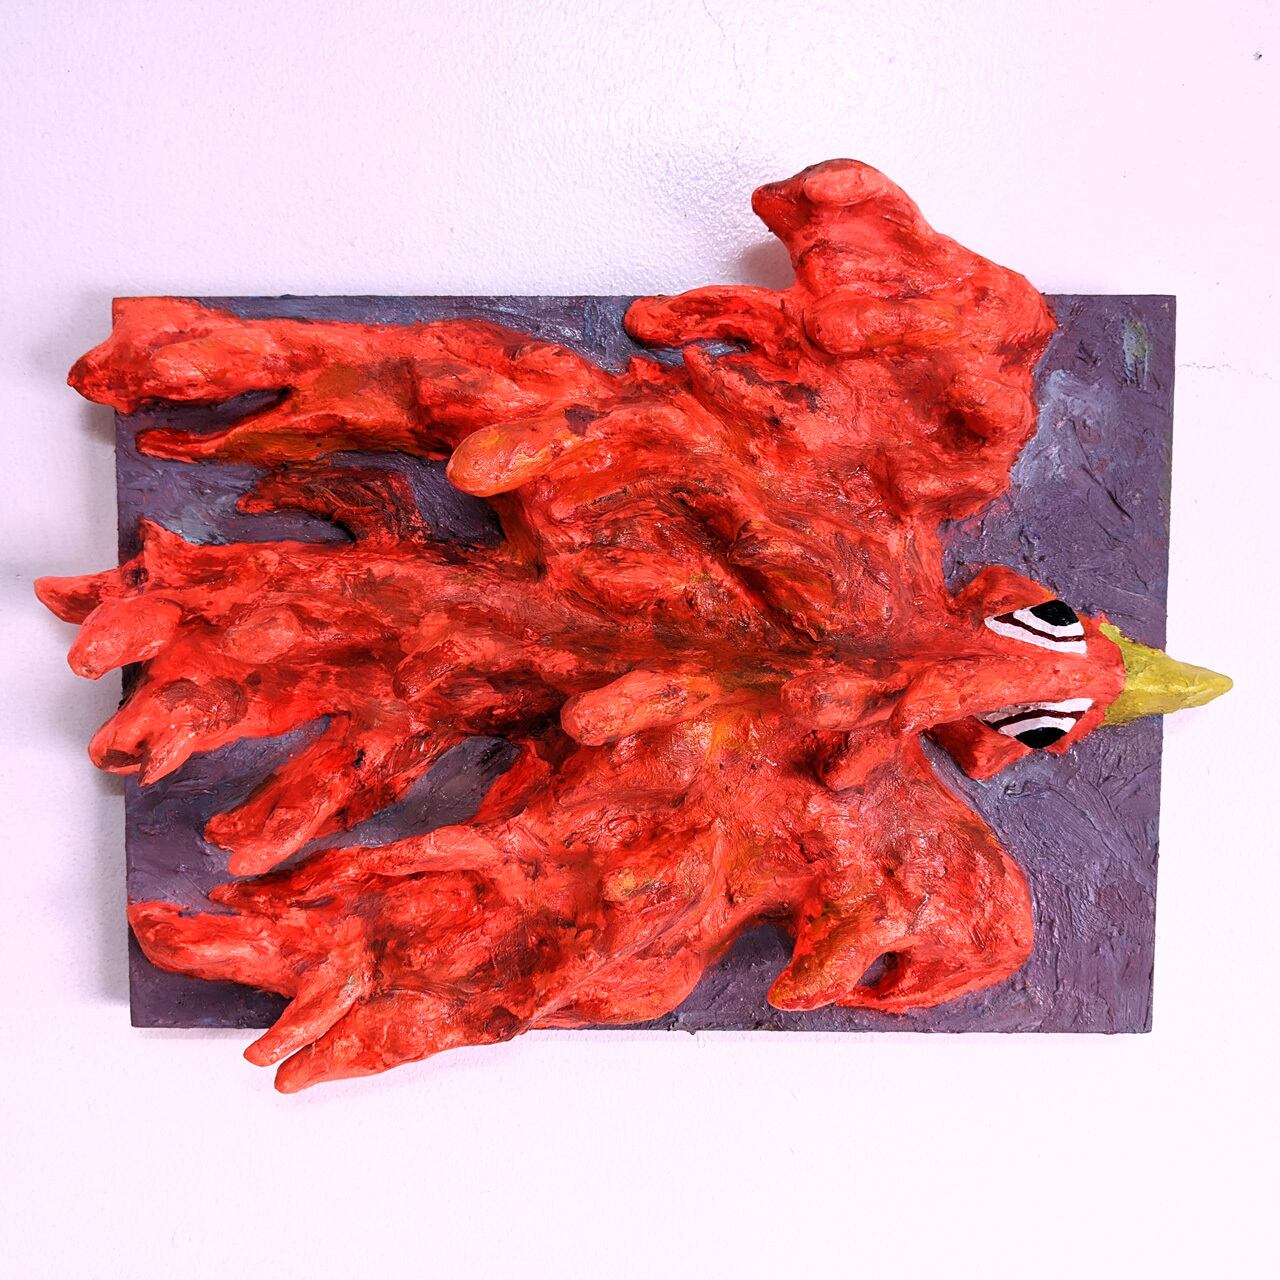 【1点物】オレンジ鳥のレリーフ / Relief of an orange bird